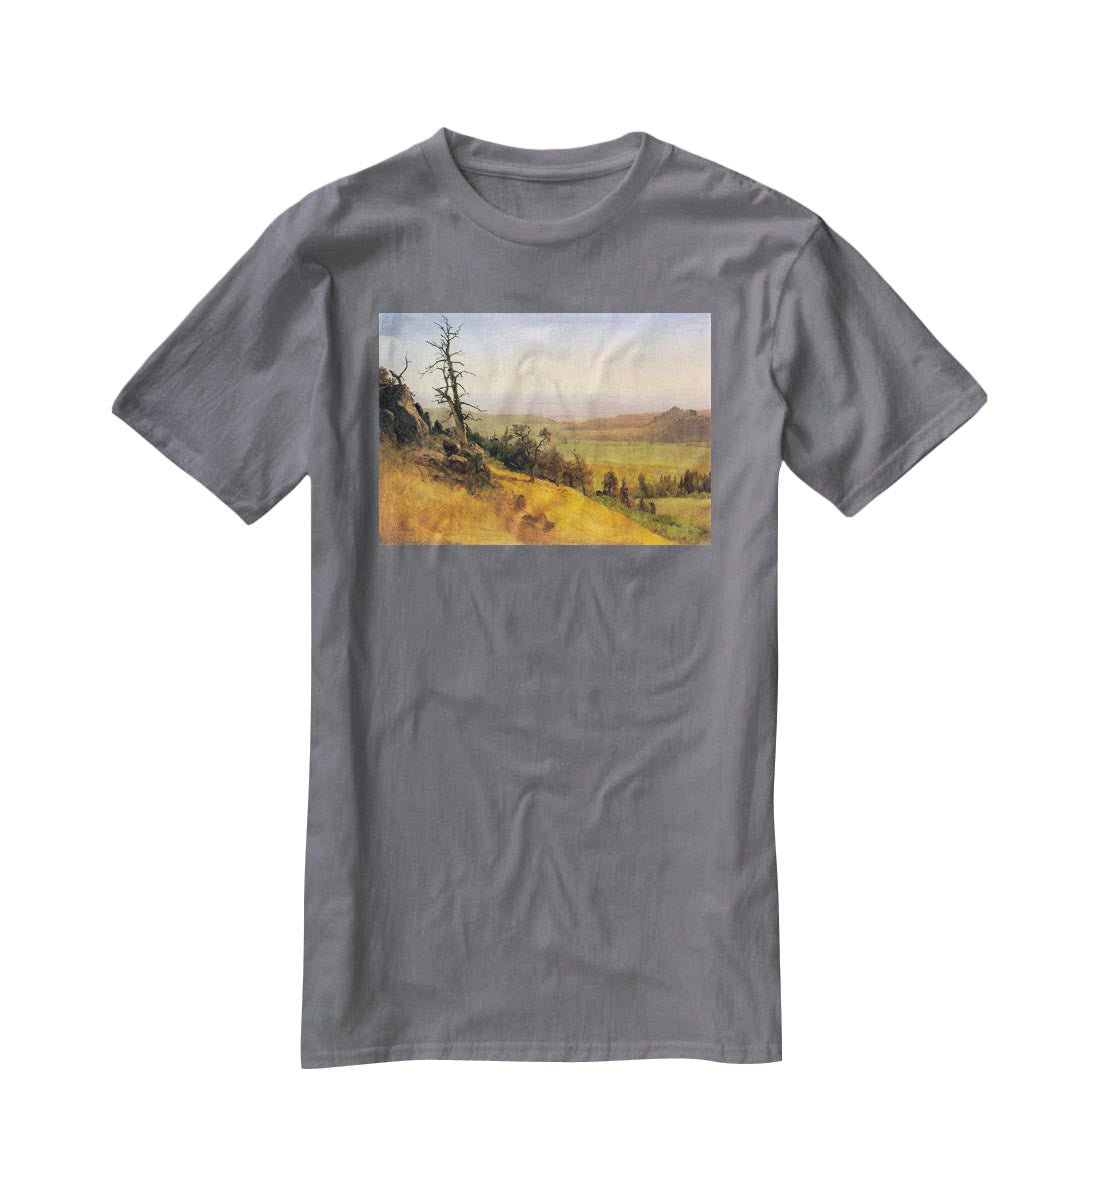 Wasatch Mountains Nebraska by Bierstadt T-Shirt - Canvas Art Rocks - 3